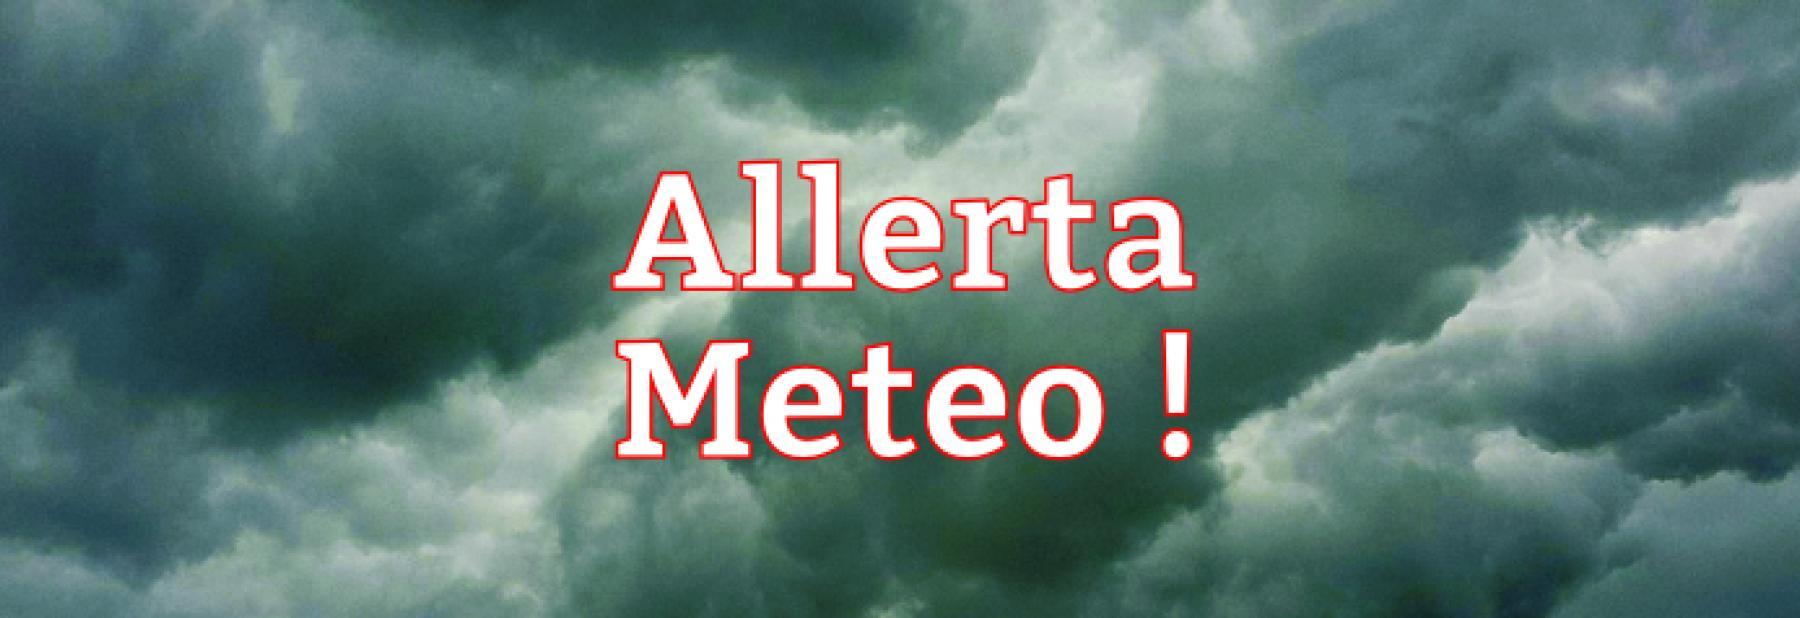 allerta_meteo